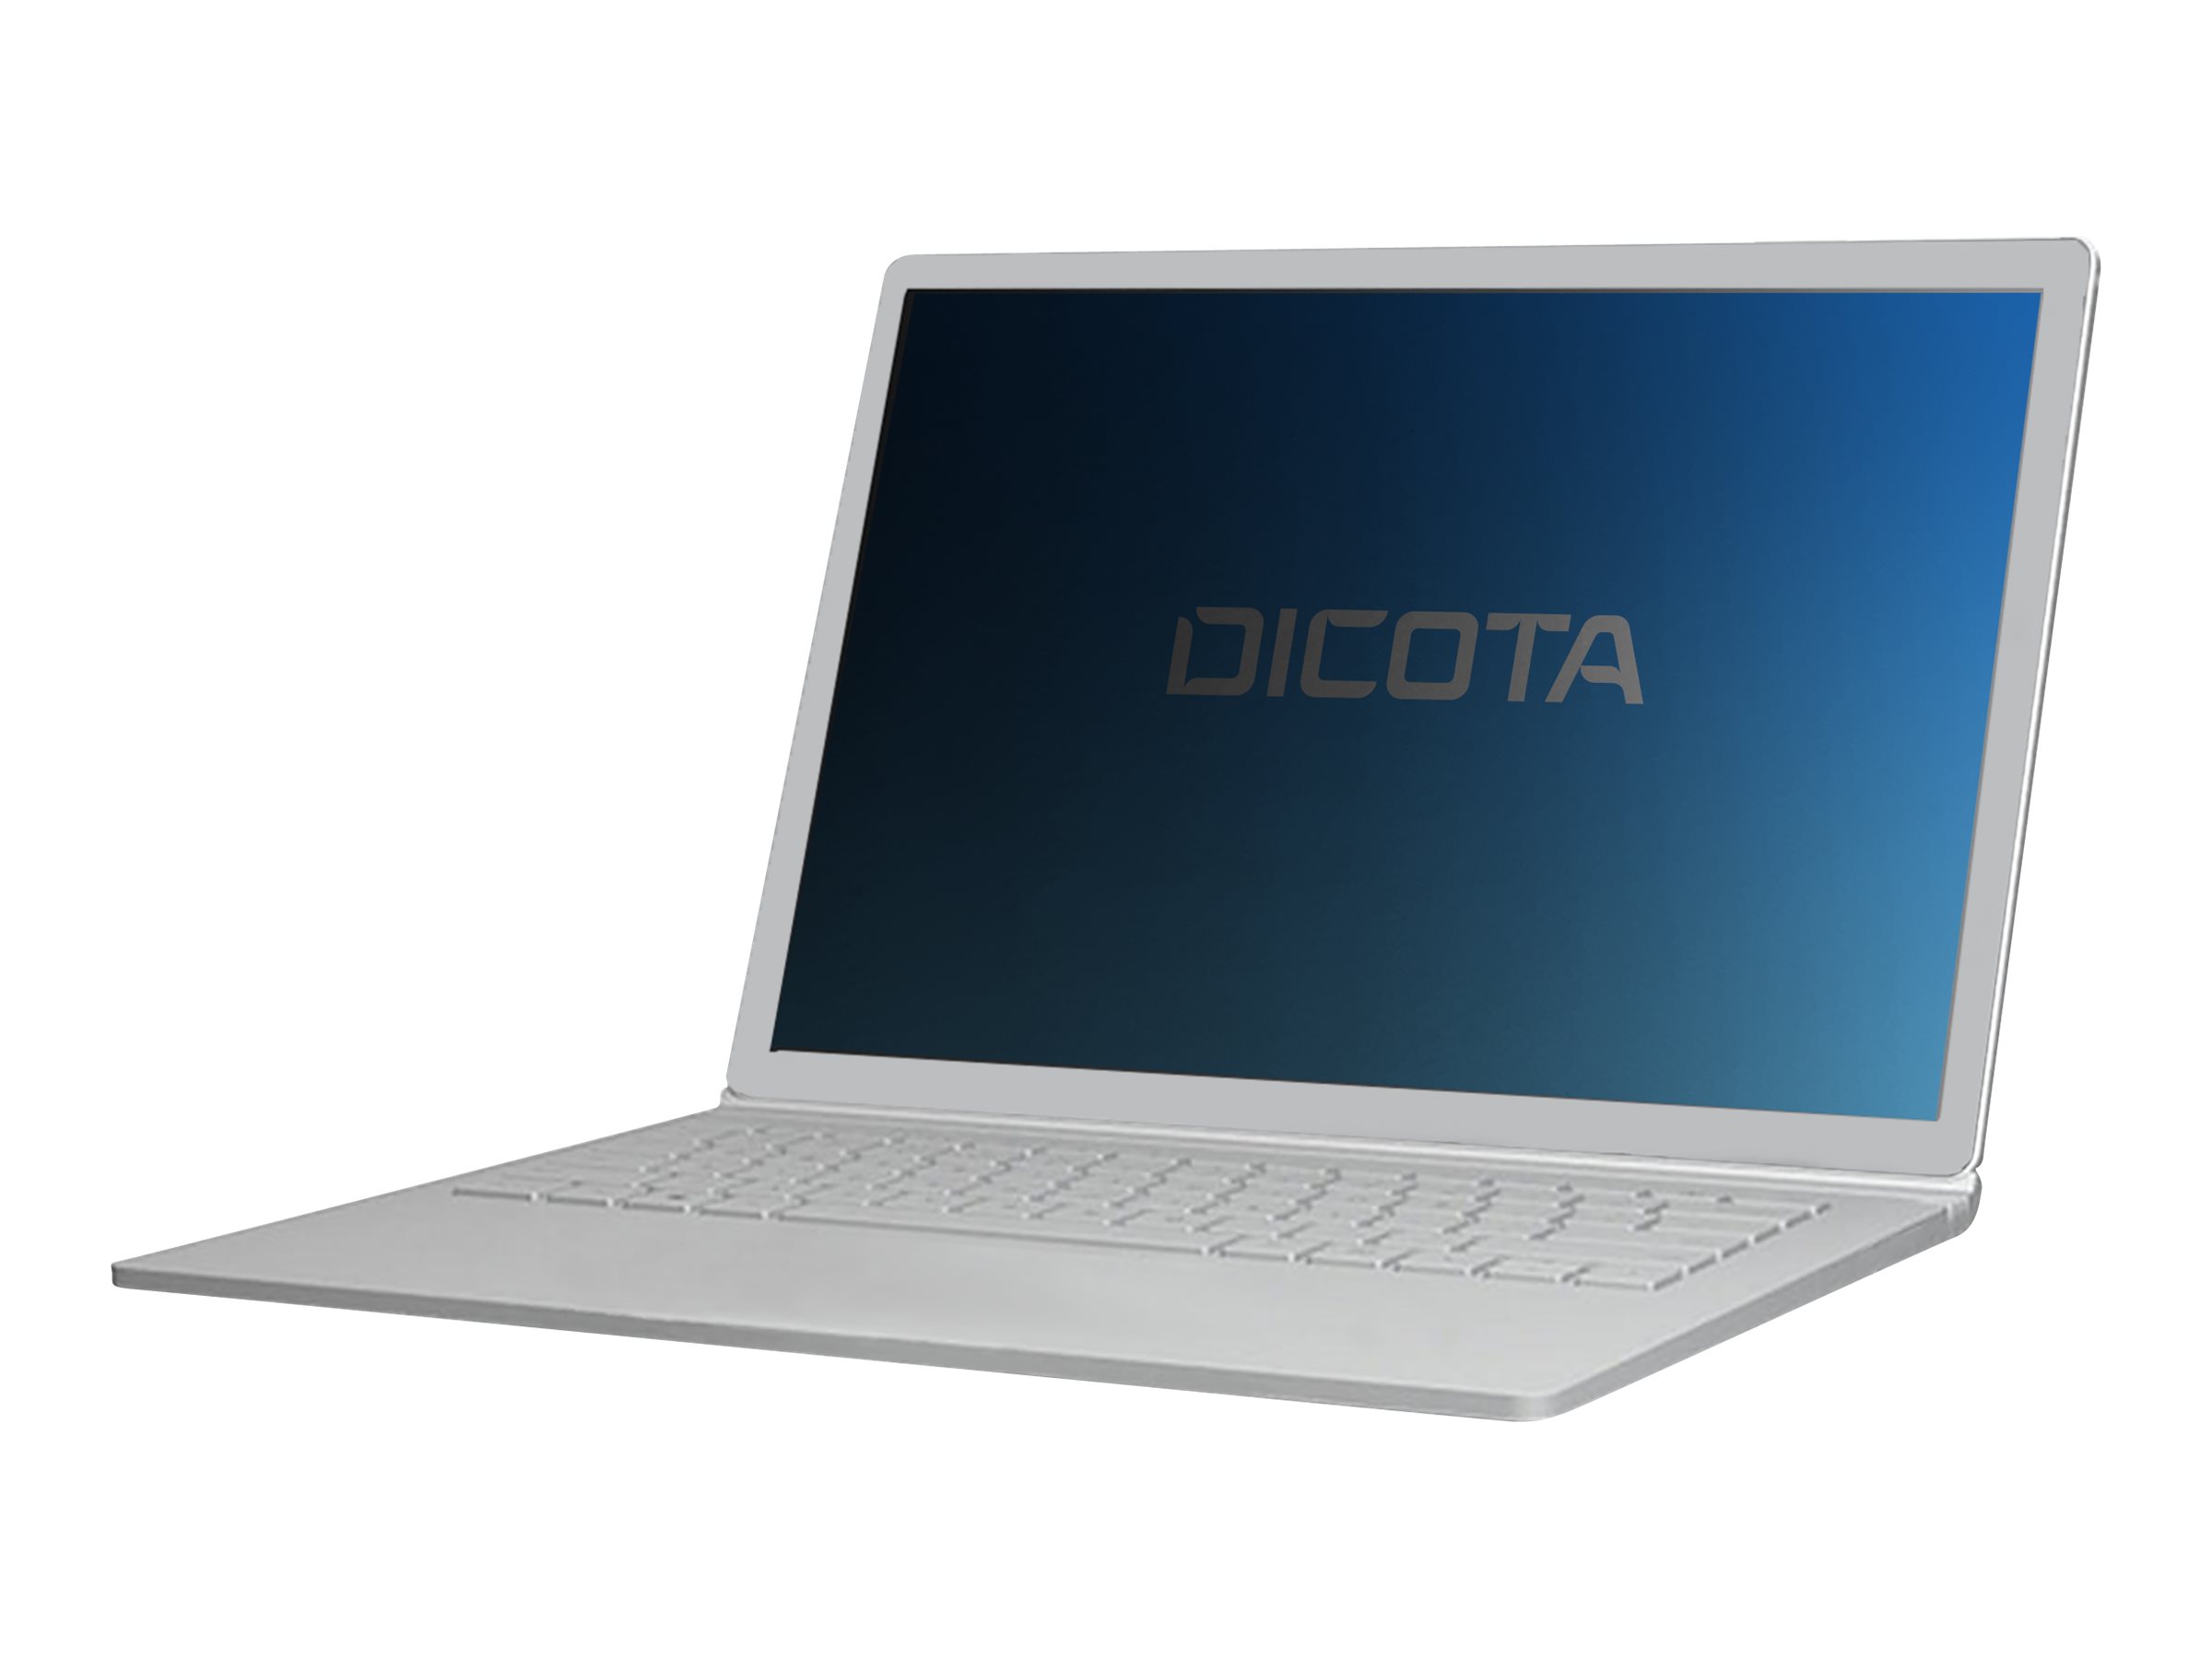 DICOTA - Filtre de confidentialité pour ordinateur portable - 4 voies - adhésif - noir - pour HP ProBook 650 G3 Notebook - D70177 - Accessoires pour écran